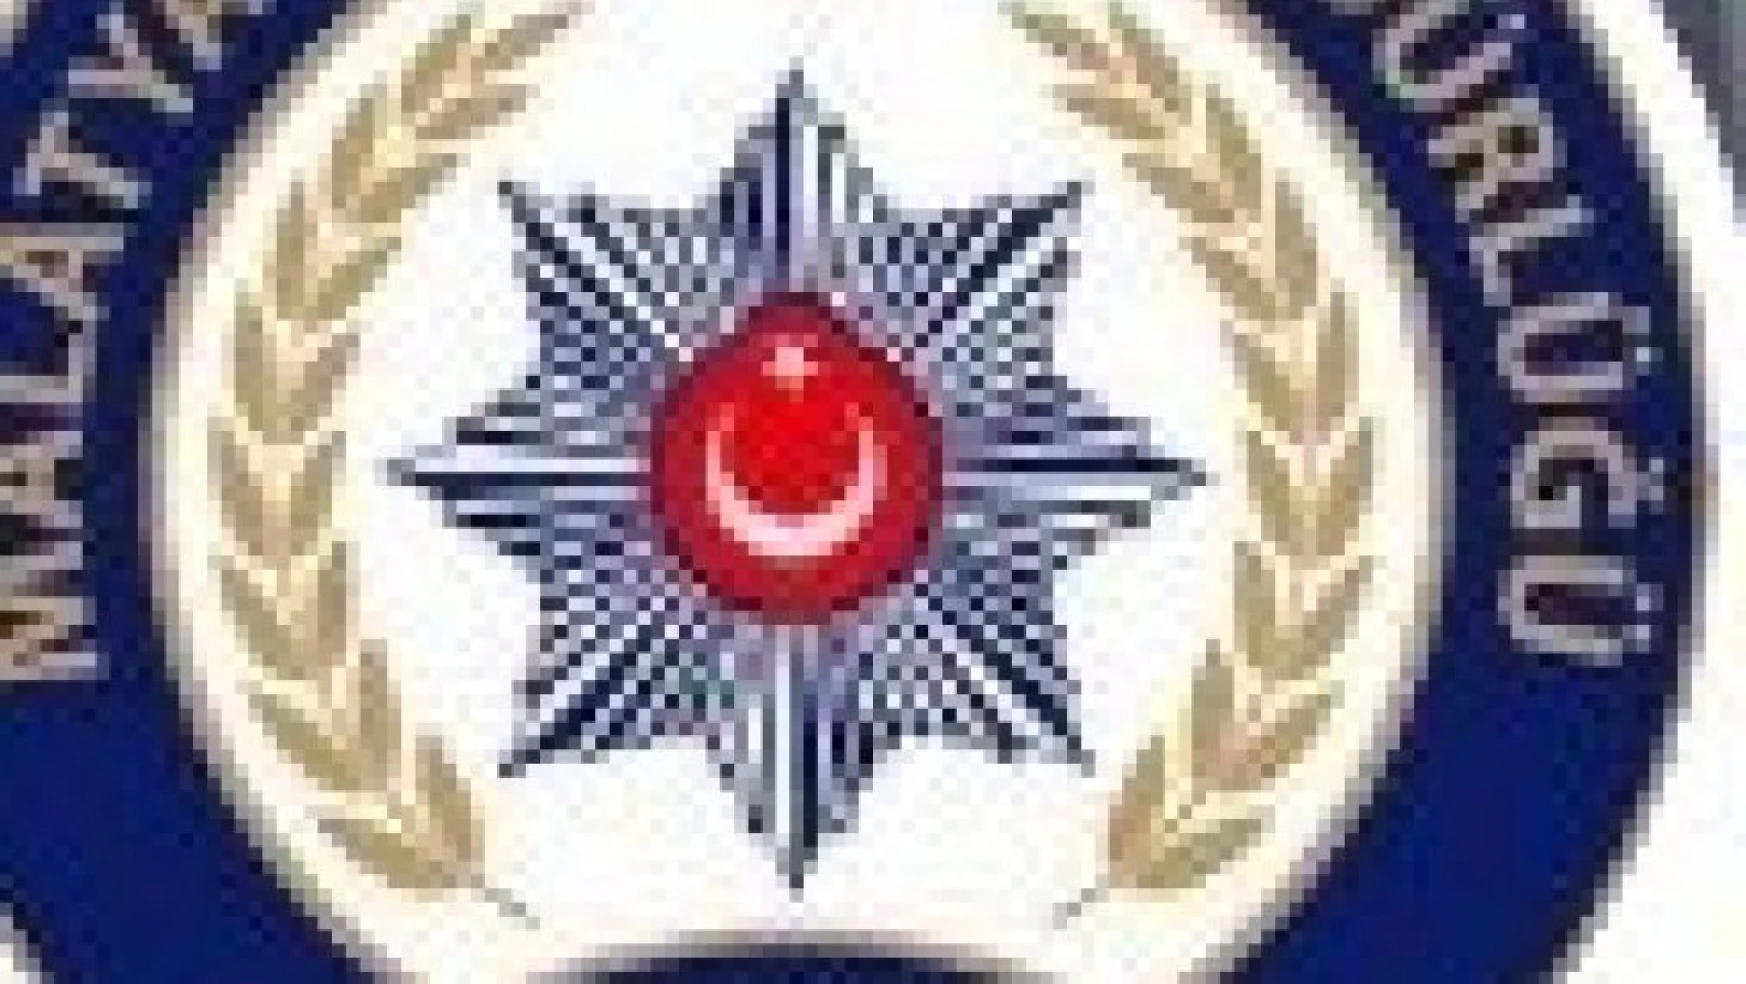 Malatya'da terör operasyonu: 9 gözaltı